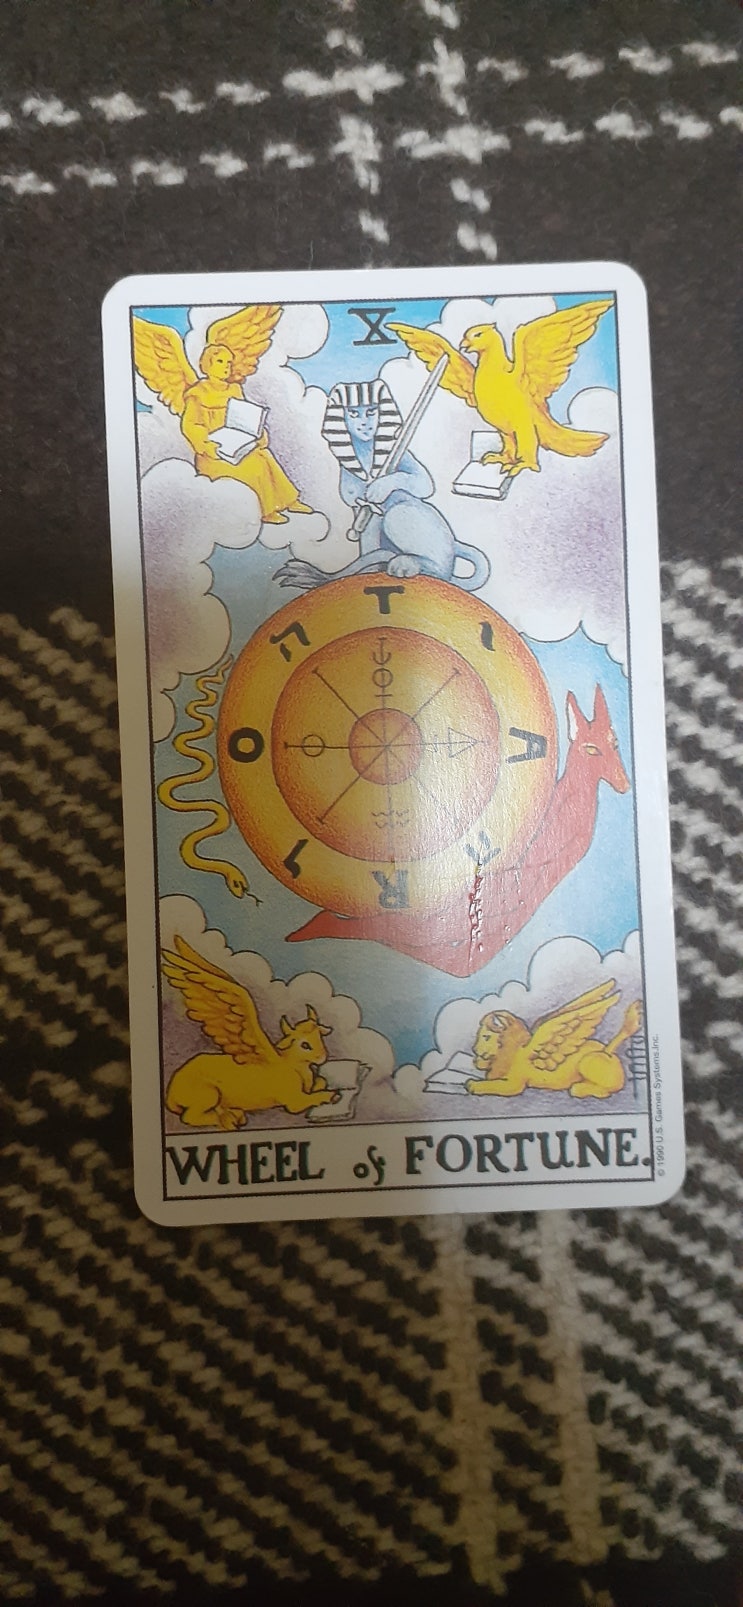 10 운명의 수레바퀴(The Wheel & Fortune)타로카드